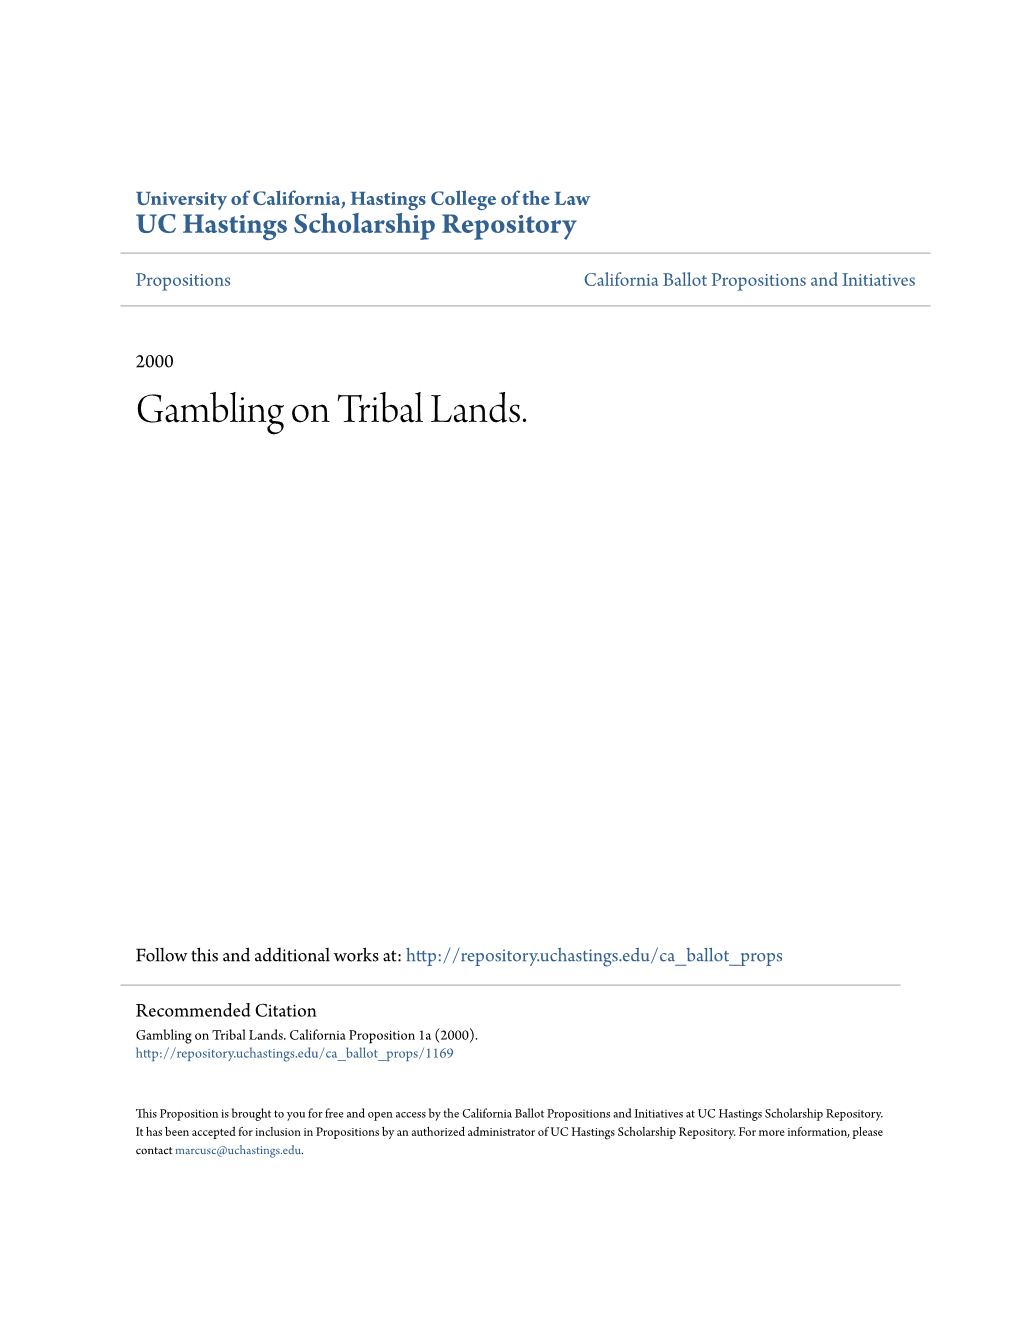 Gambling on Tribal Lands